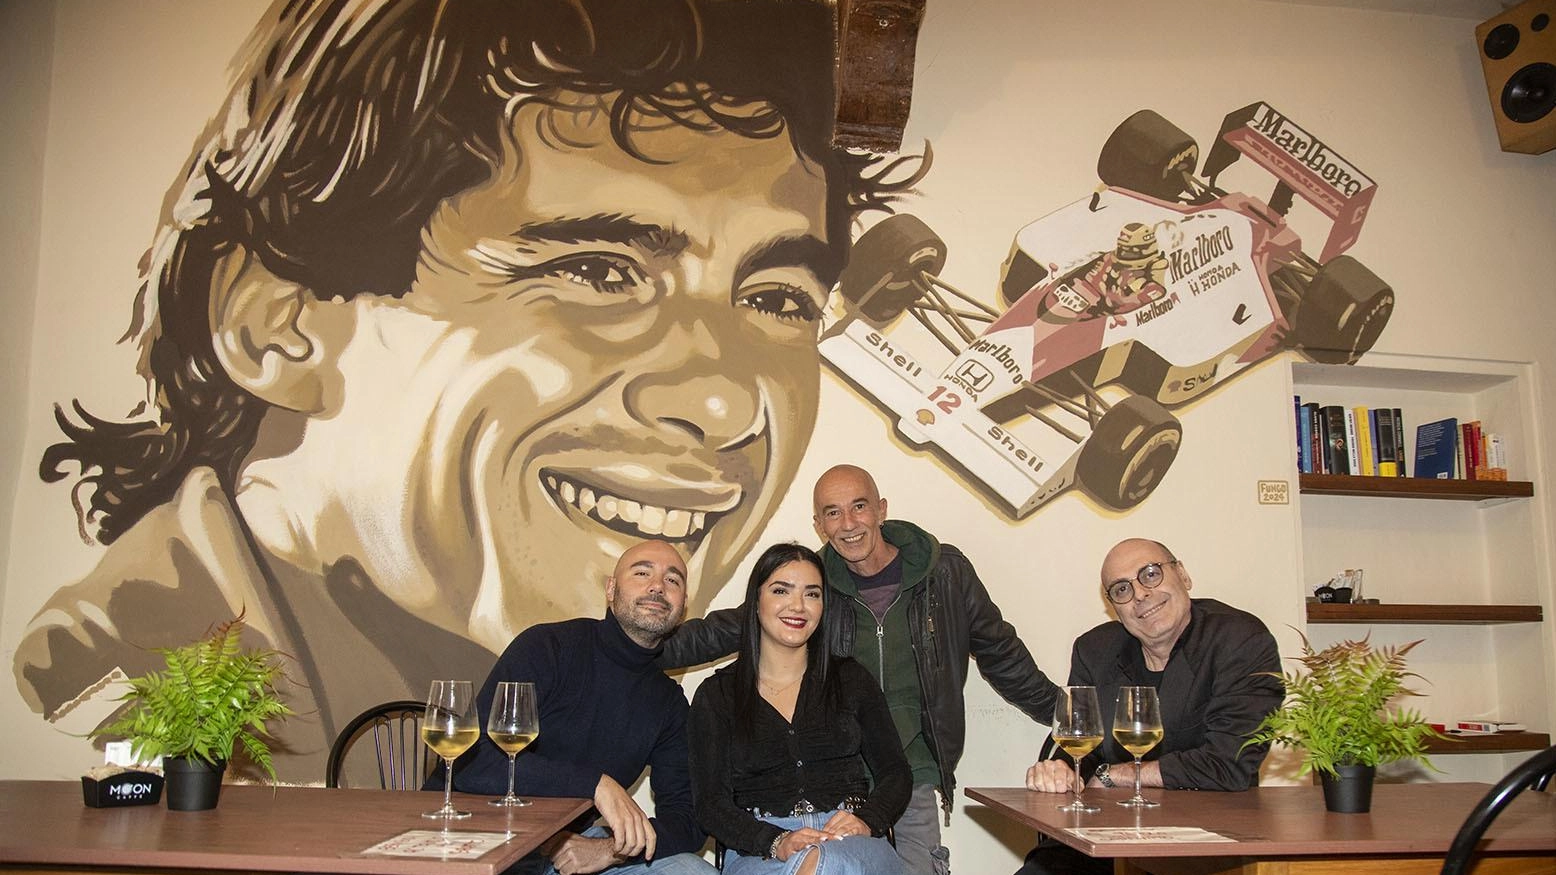 L’omaggio ad Ayrton Senna. Murale al Caffè del Duomo